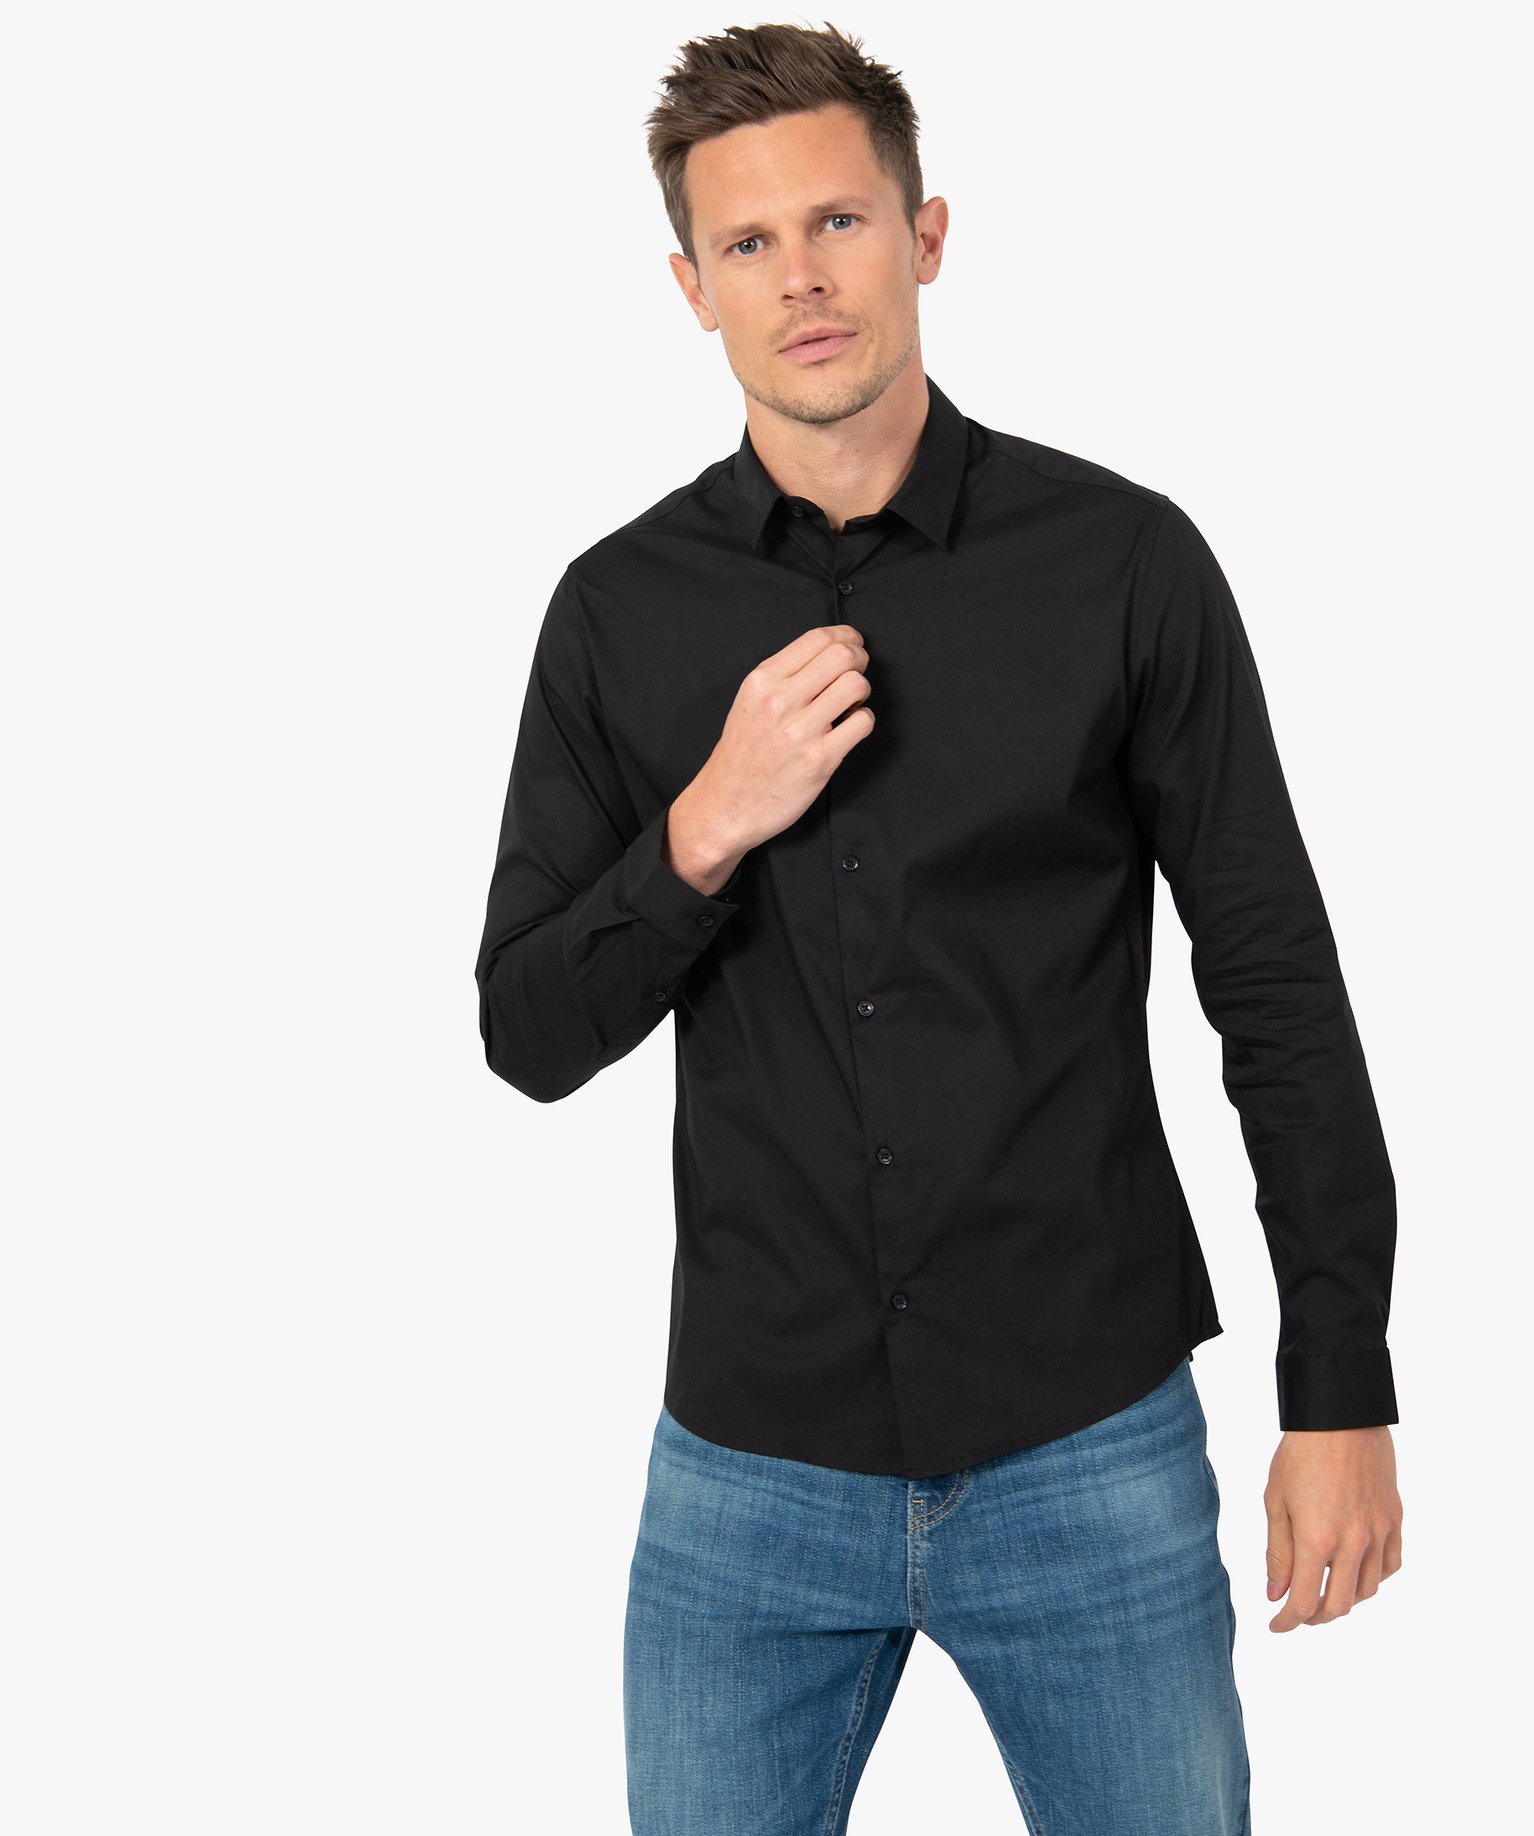 chemise homme unie coupe slim en coton stretch noir chemise manches longues